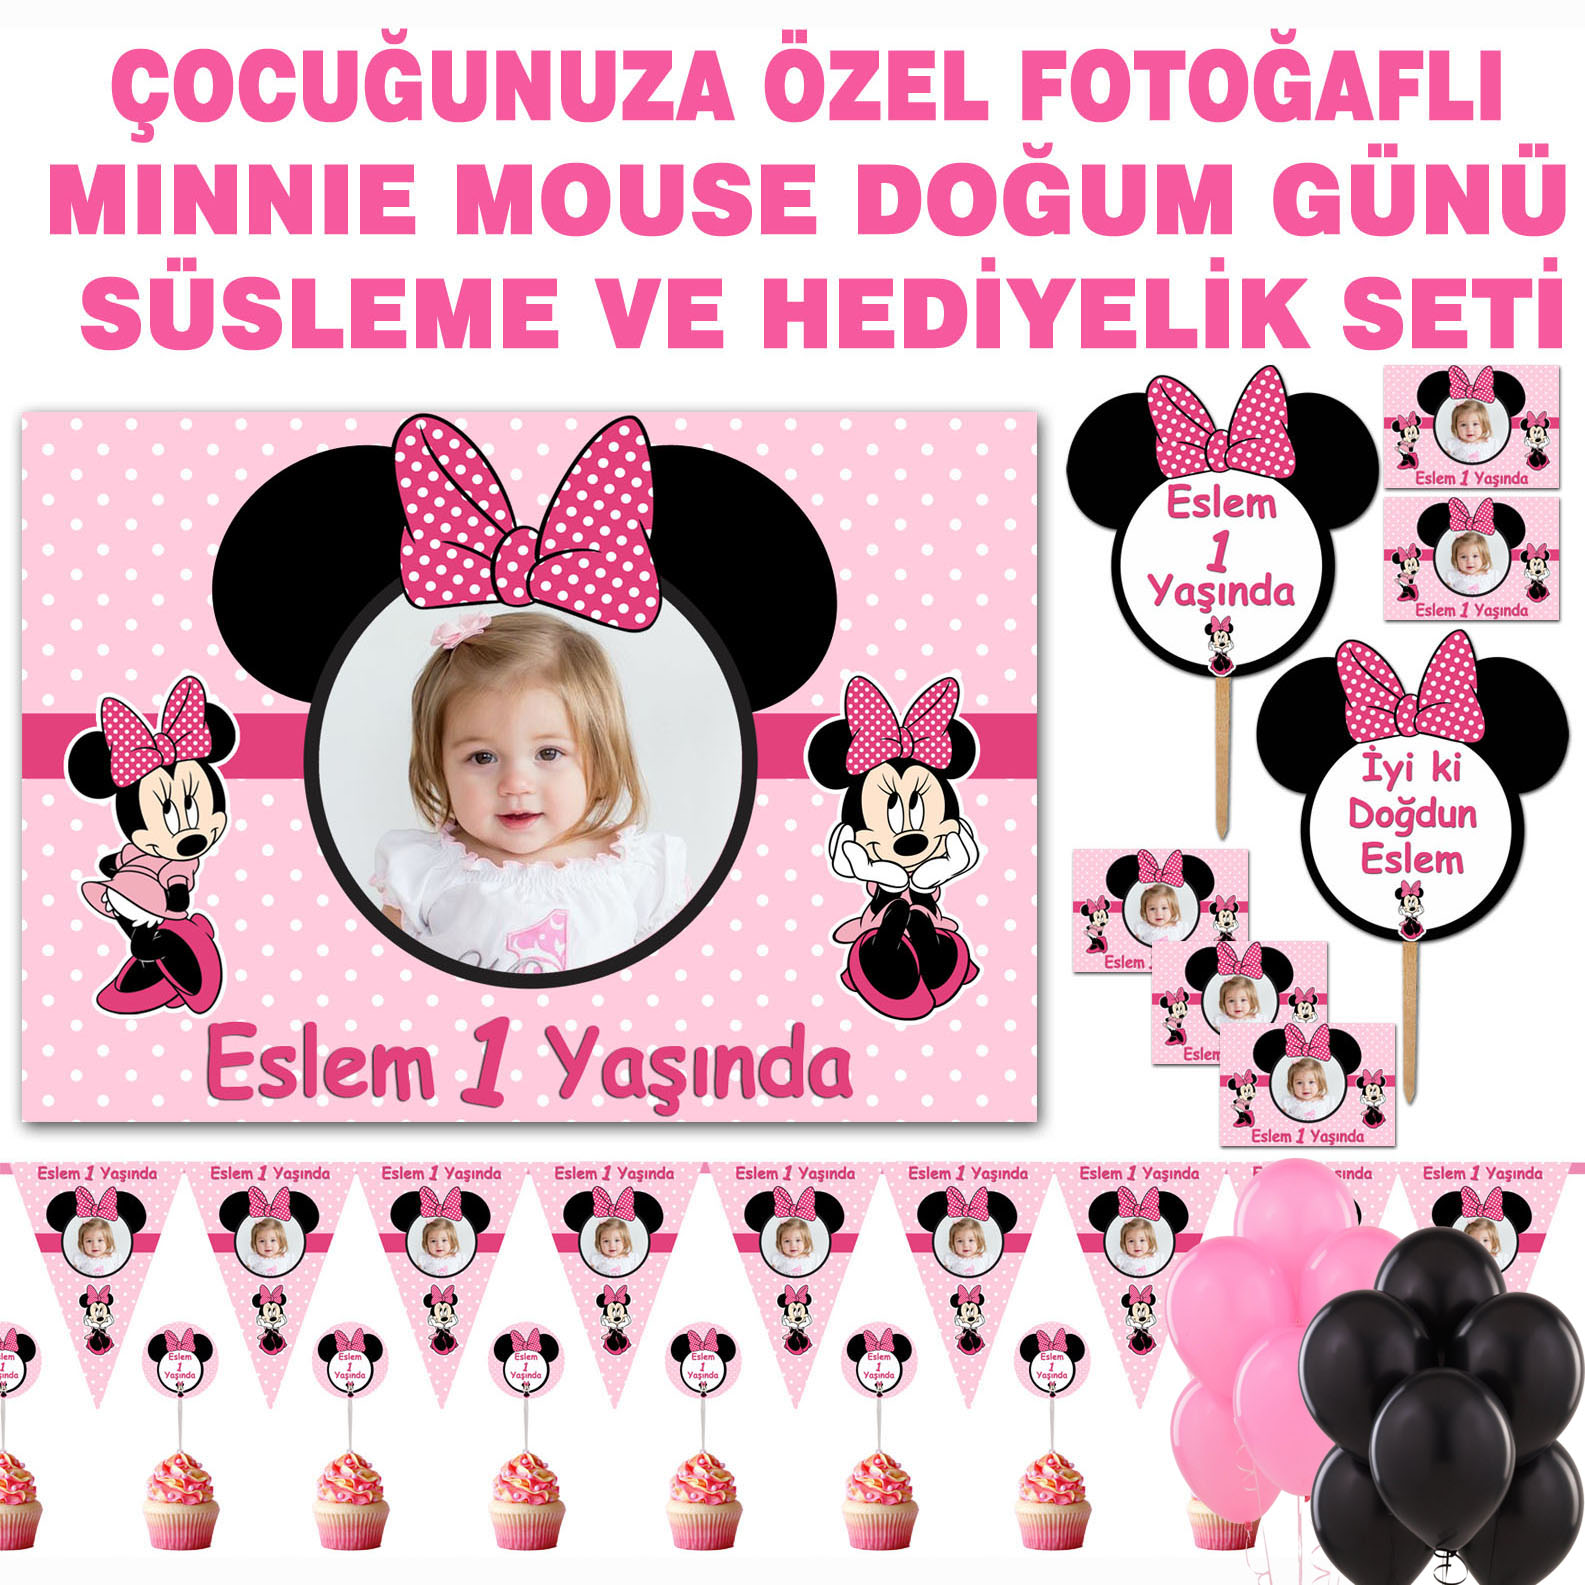 Minnie Mouse Doğum Günü Süsleme Hediyelik Seti Kod6019